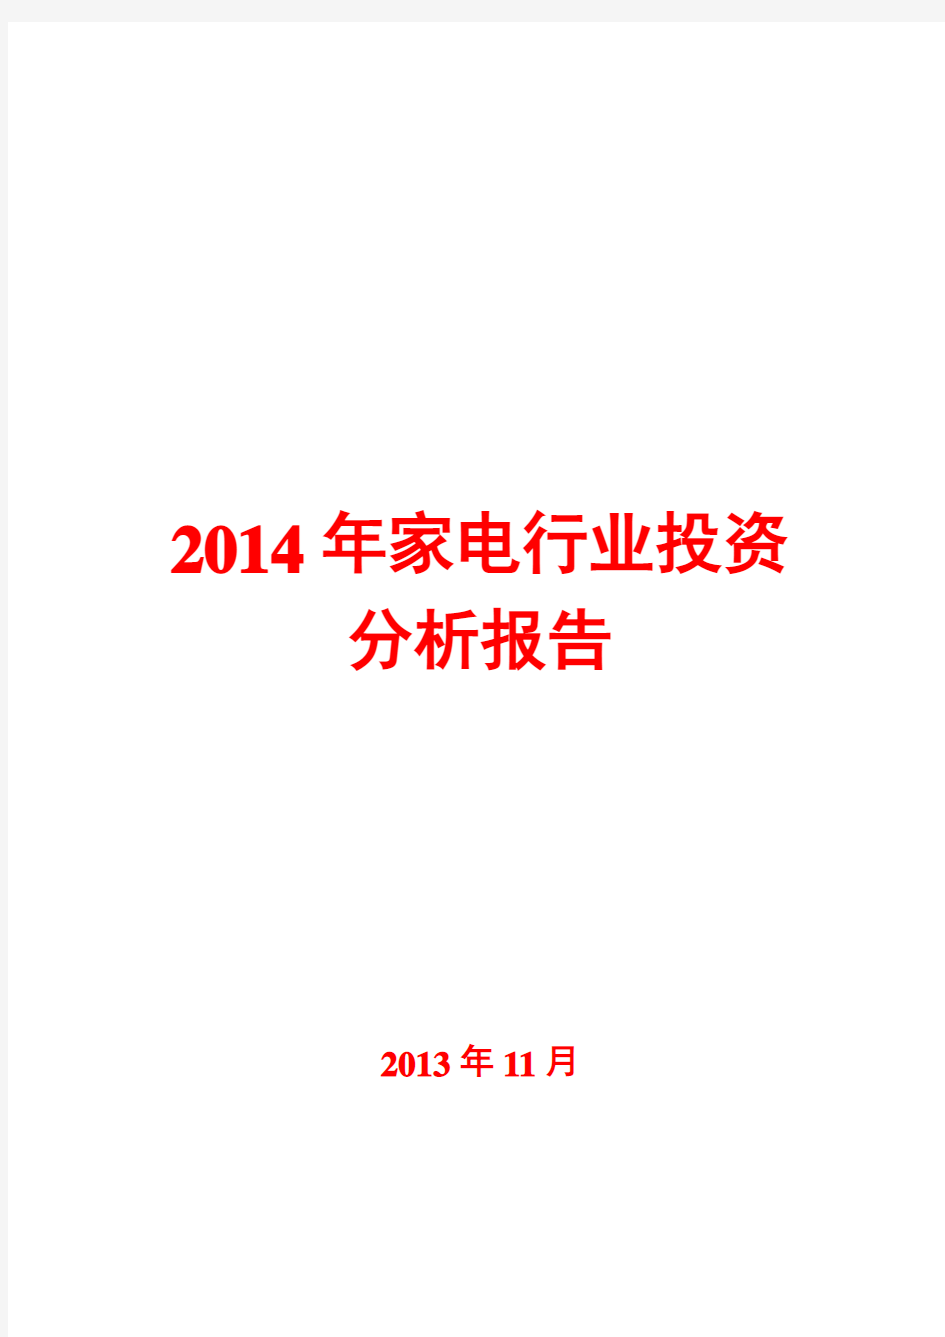 2014年家电行业投资分析报告